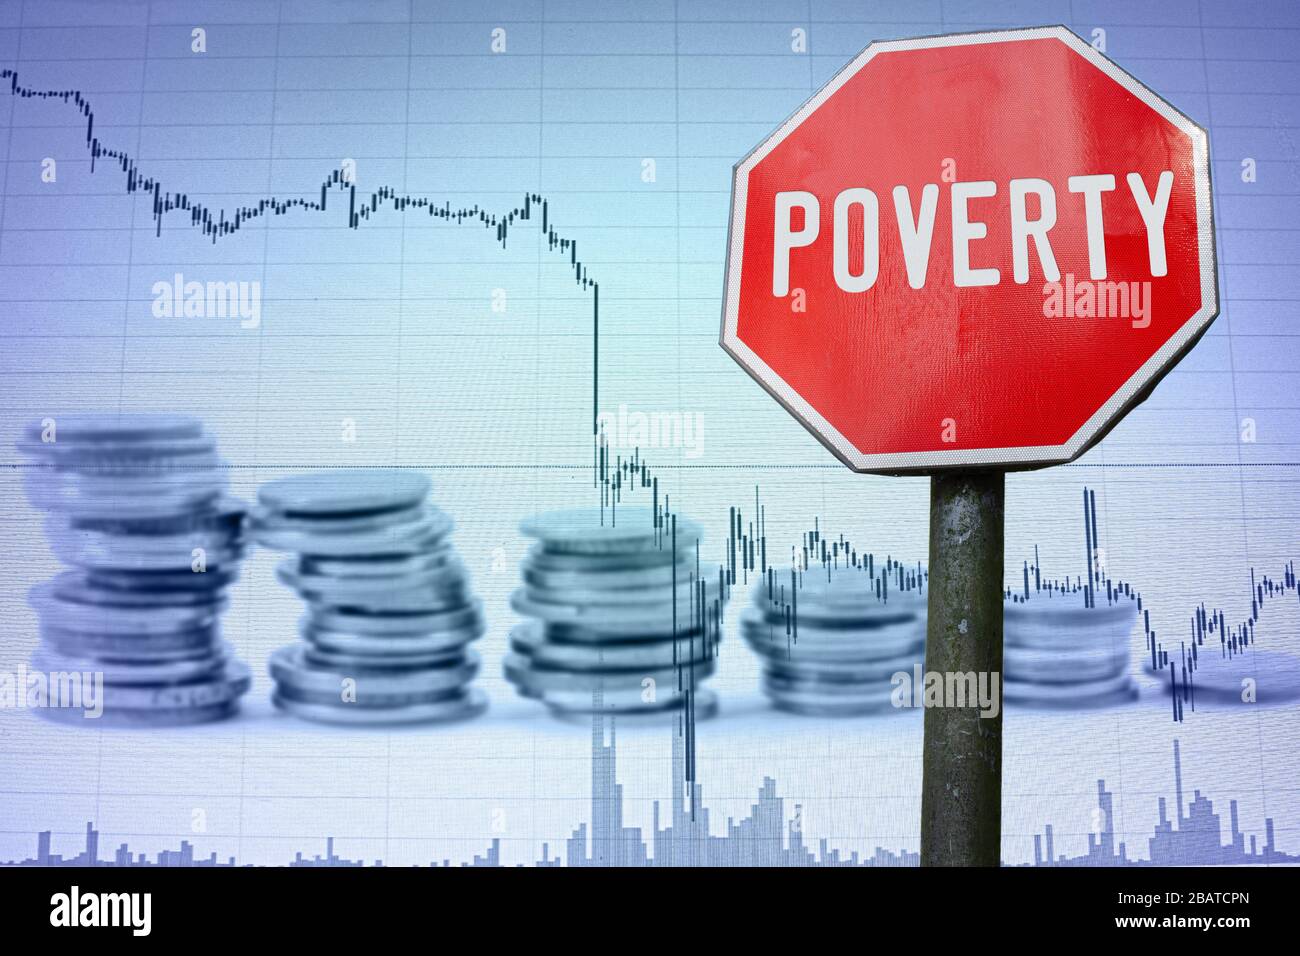 Armut zeigt den wirtschaftlichen Hintergrund an - Grafik und Münzen. Finanzunfall in der Weltwirtschaft wegen Coronavirus. Weltwirtschaftskrise, Rezession Stockfoto